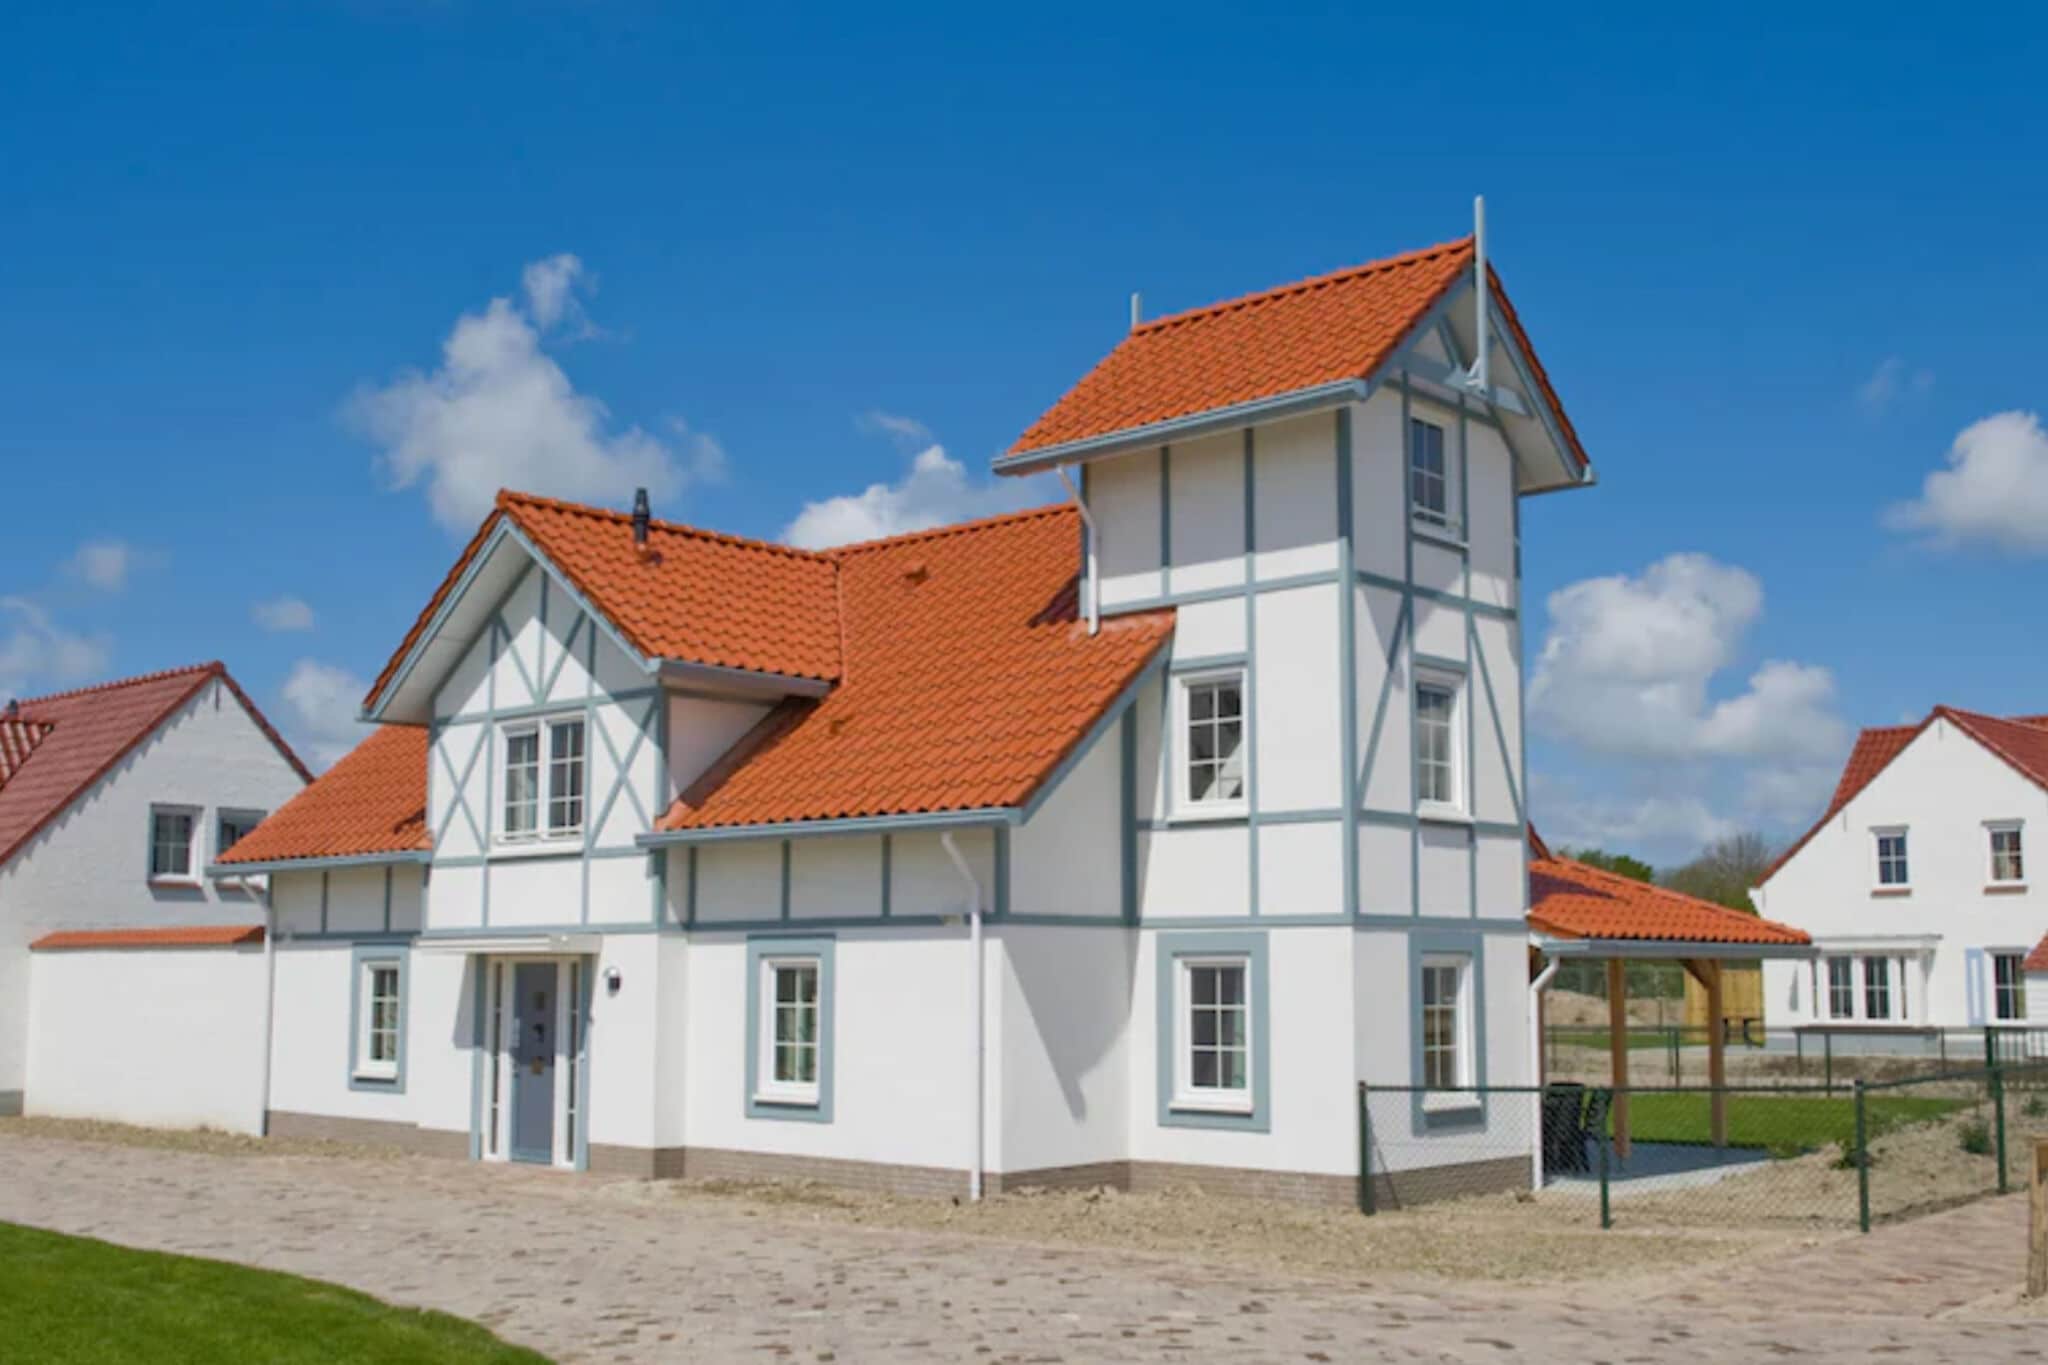 Gerestylede villa voor drie gezinnen vlakbij zee